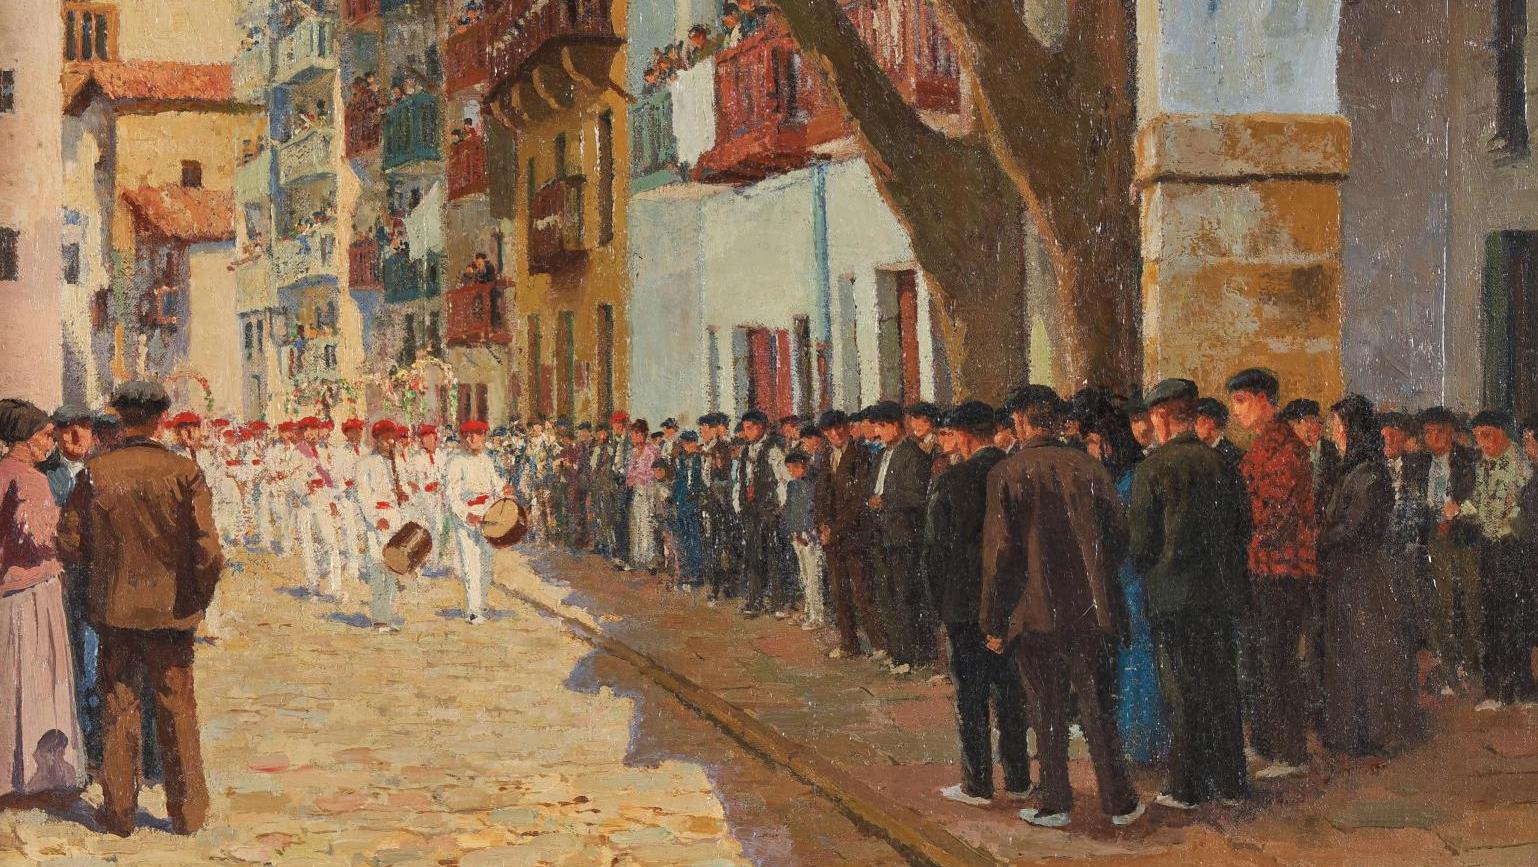 Georges Masson (1875-1949), Procession des txistularis à Pasajes, huile sur toile... Le Pays basque de Masson, Arrue et Floutier